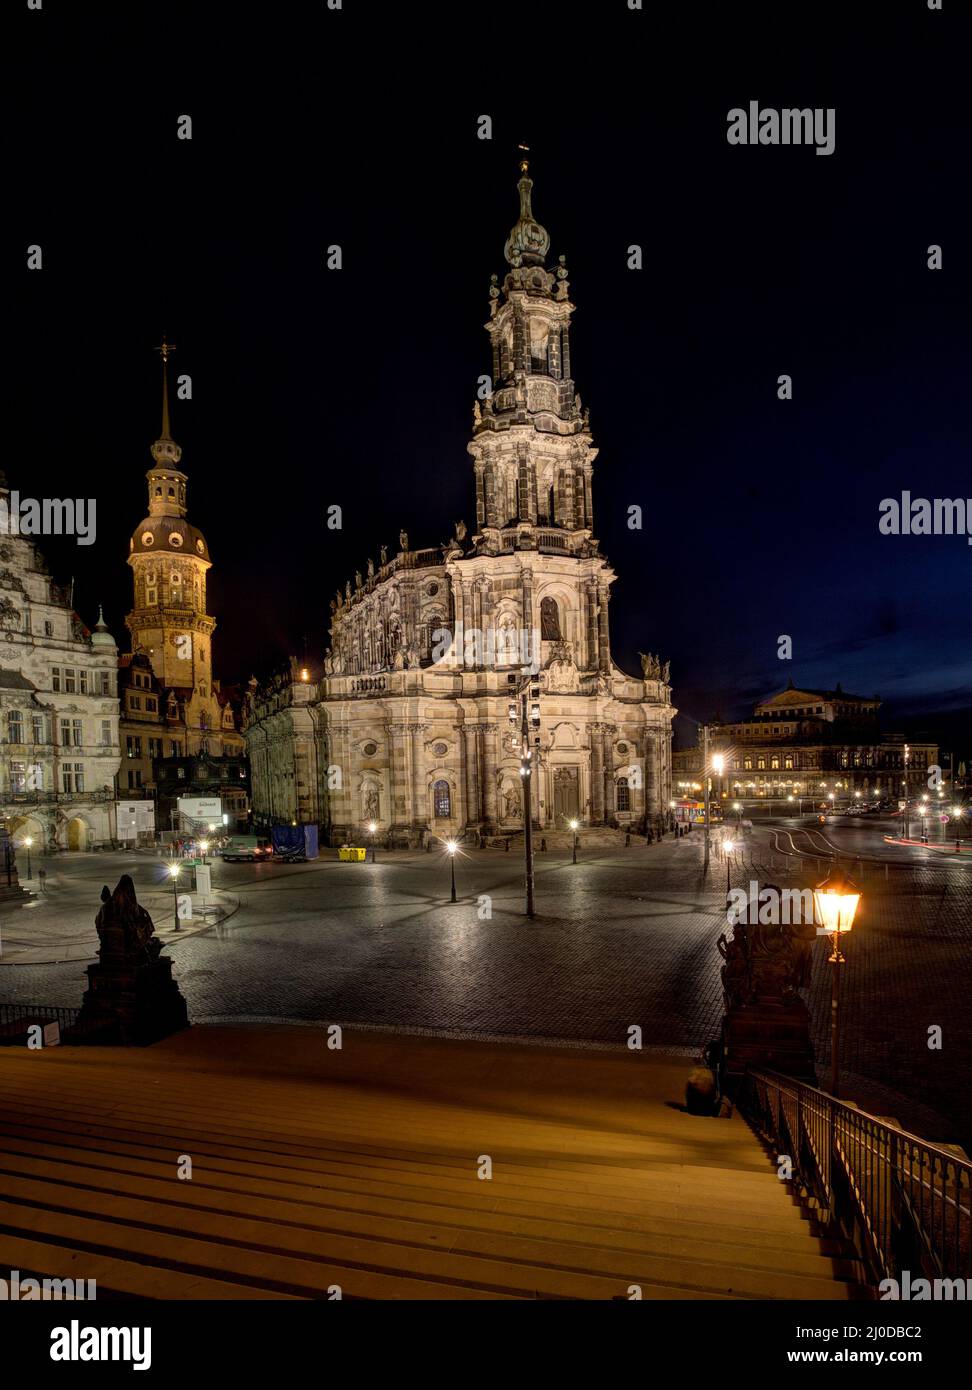 Cattedrale di Dresda - la Cattedrale della Santissima Trinità - Chiesa cattolica della corte reale di Sassonia - Katholische Hofkirche. Foto Stock